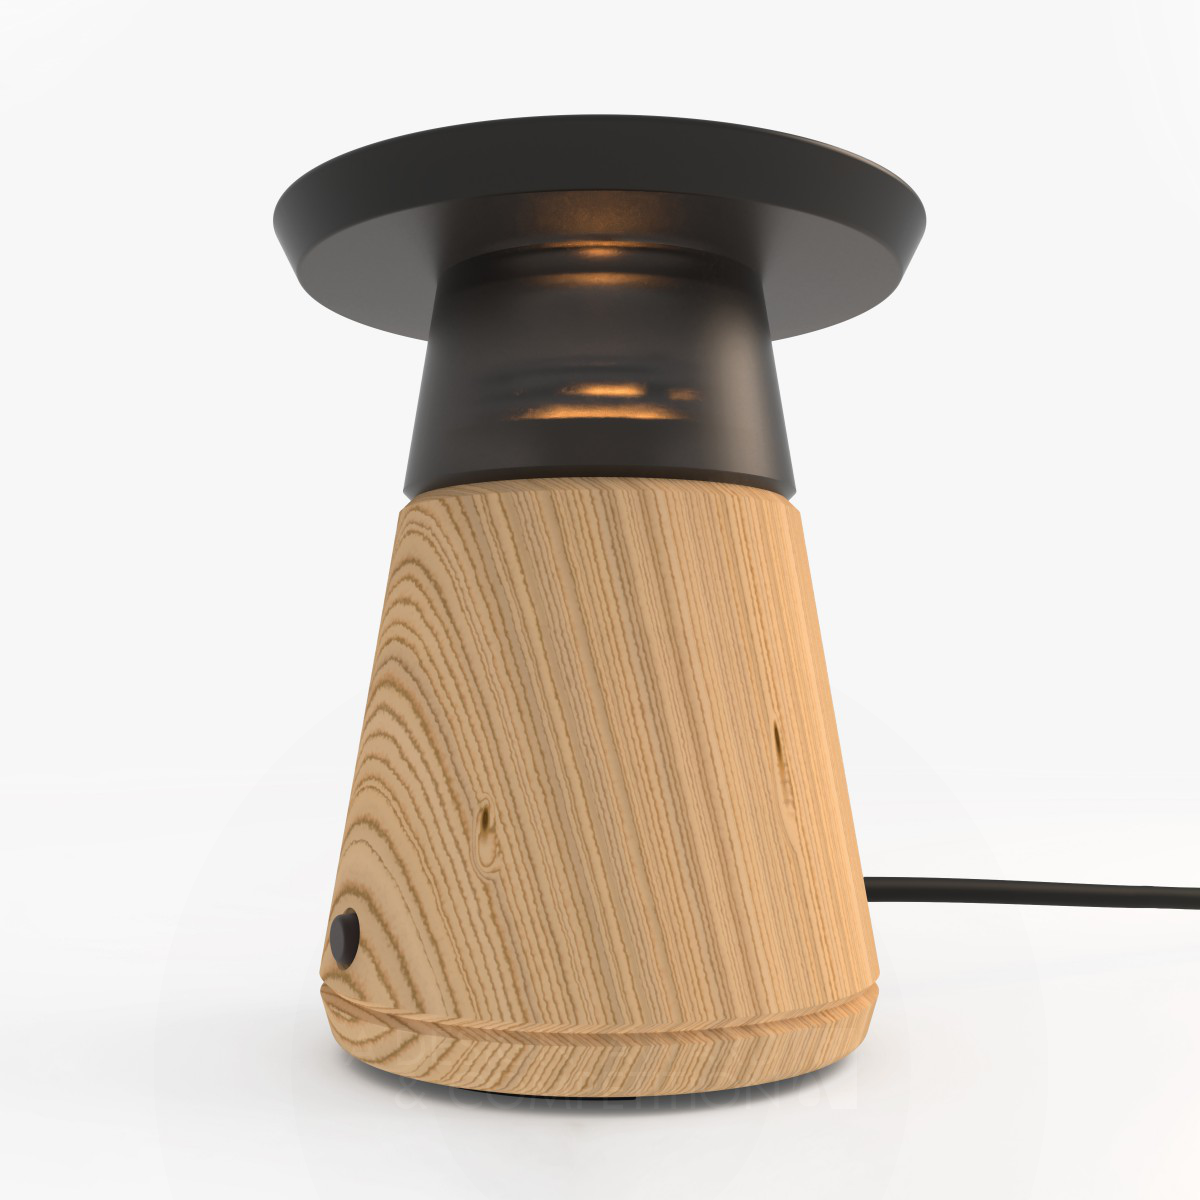 Sunnest : Une Lampe de Chevet Innovante pour Améliorer la Qualité du Sommeil